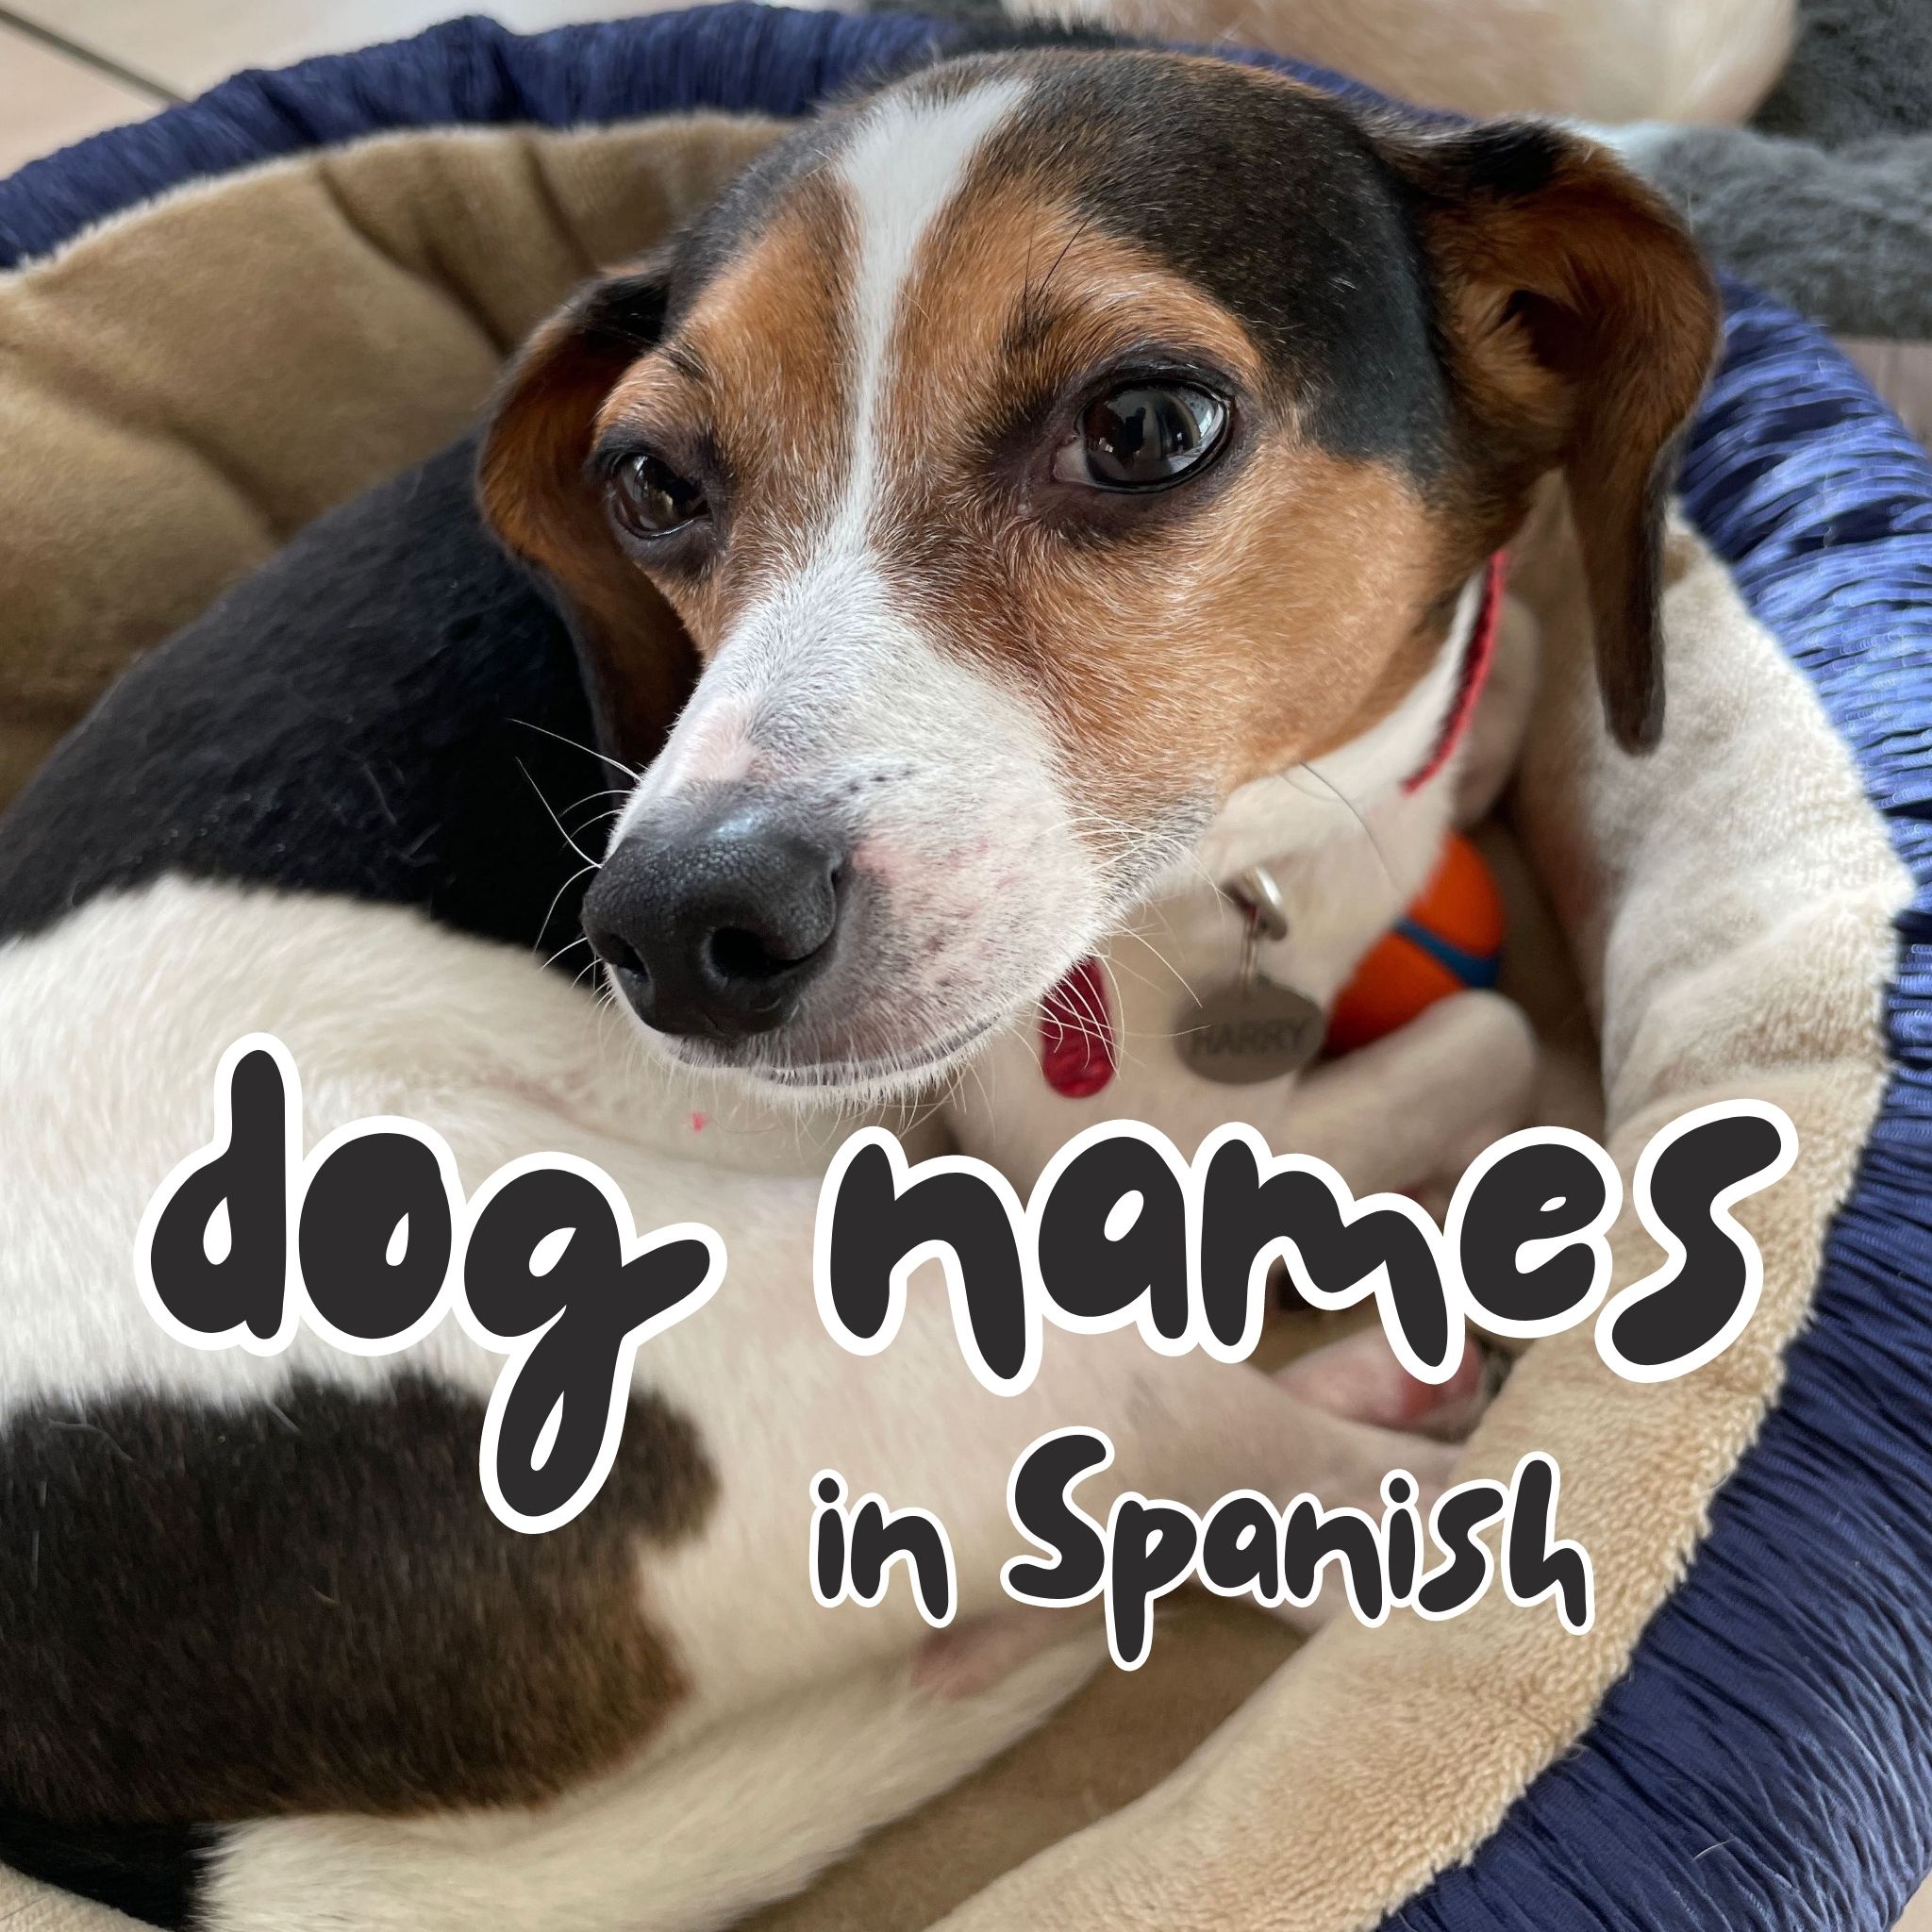 Dog names in Spanish